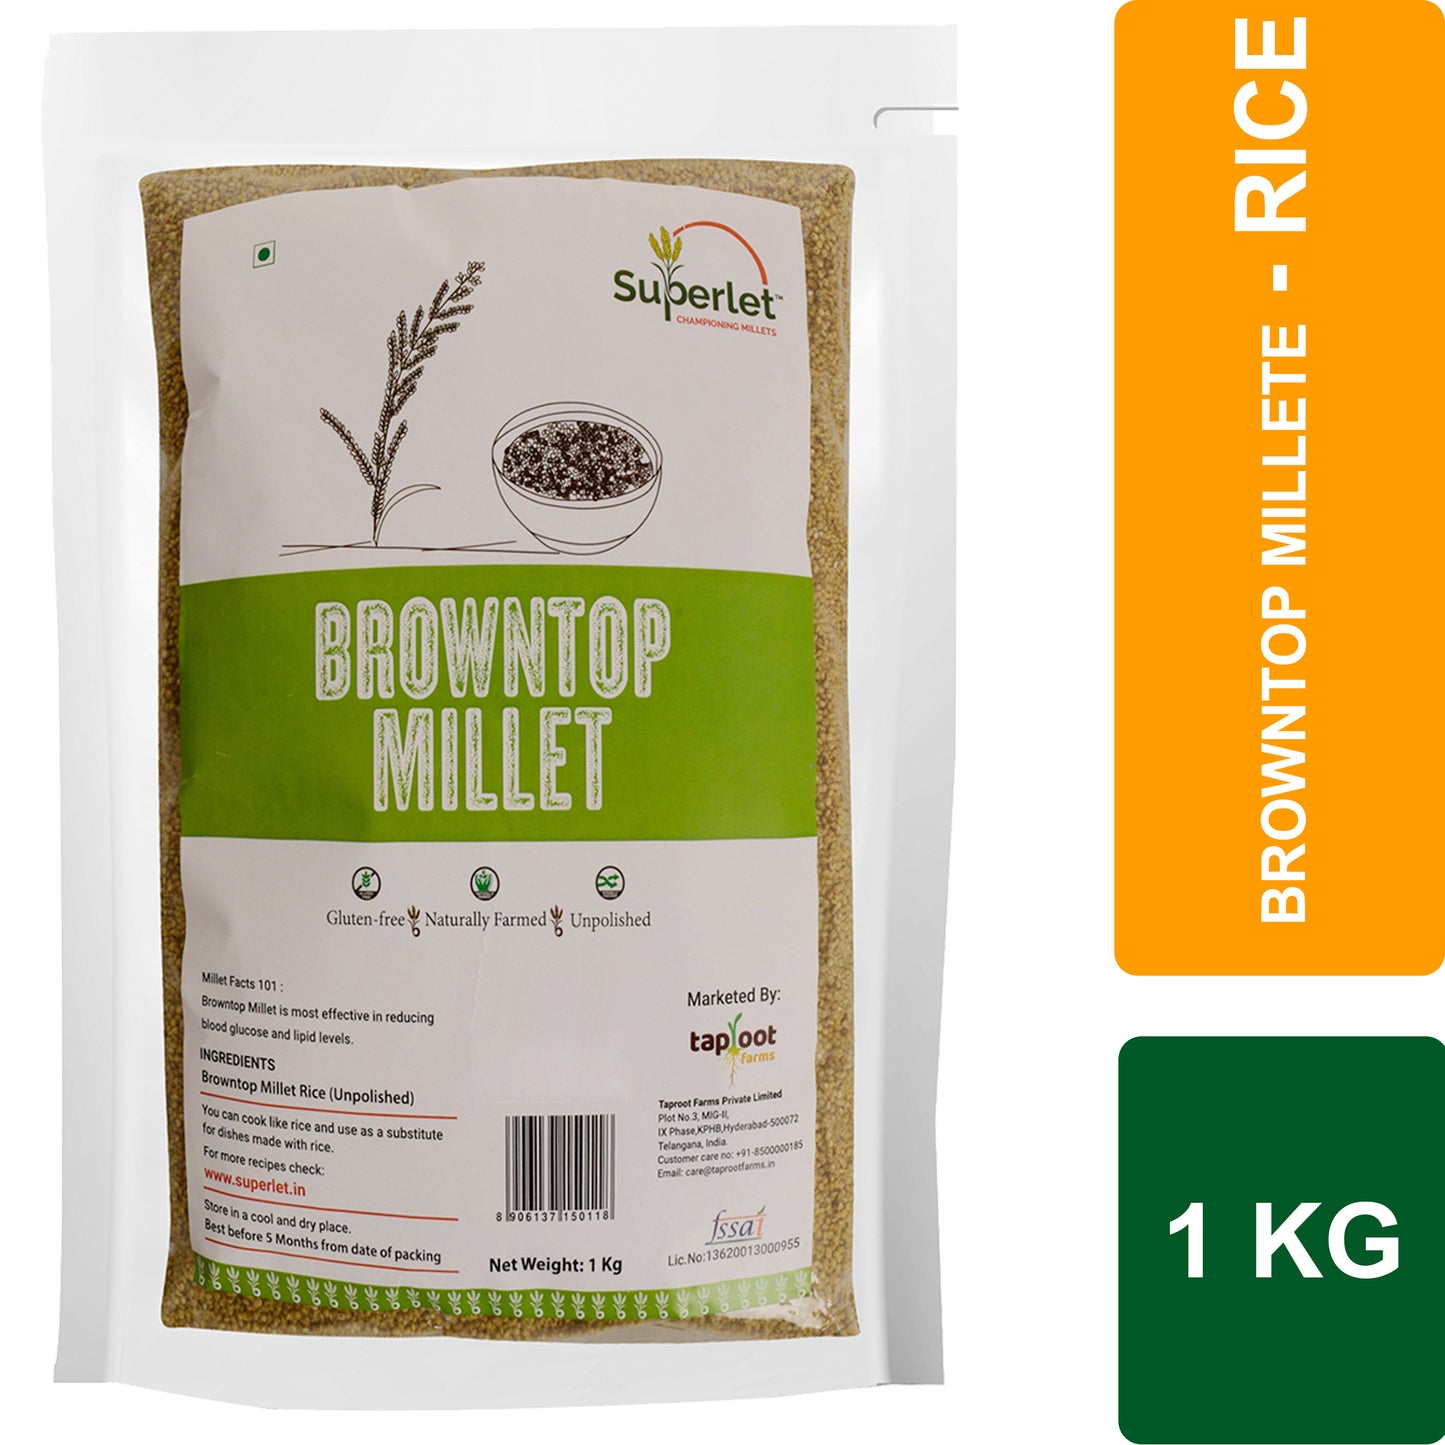 Browntop Millet -1 Kg